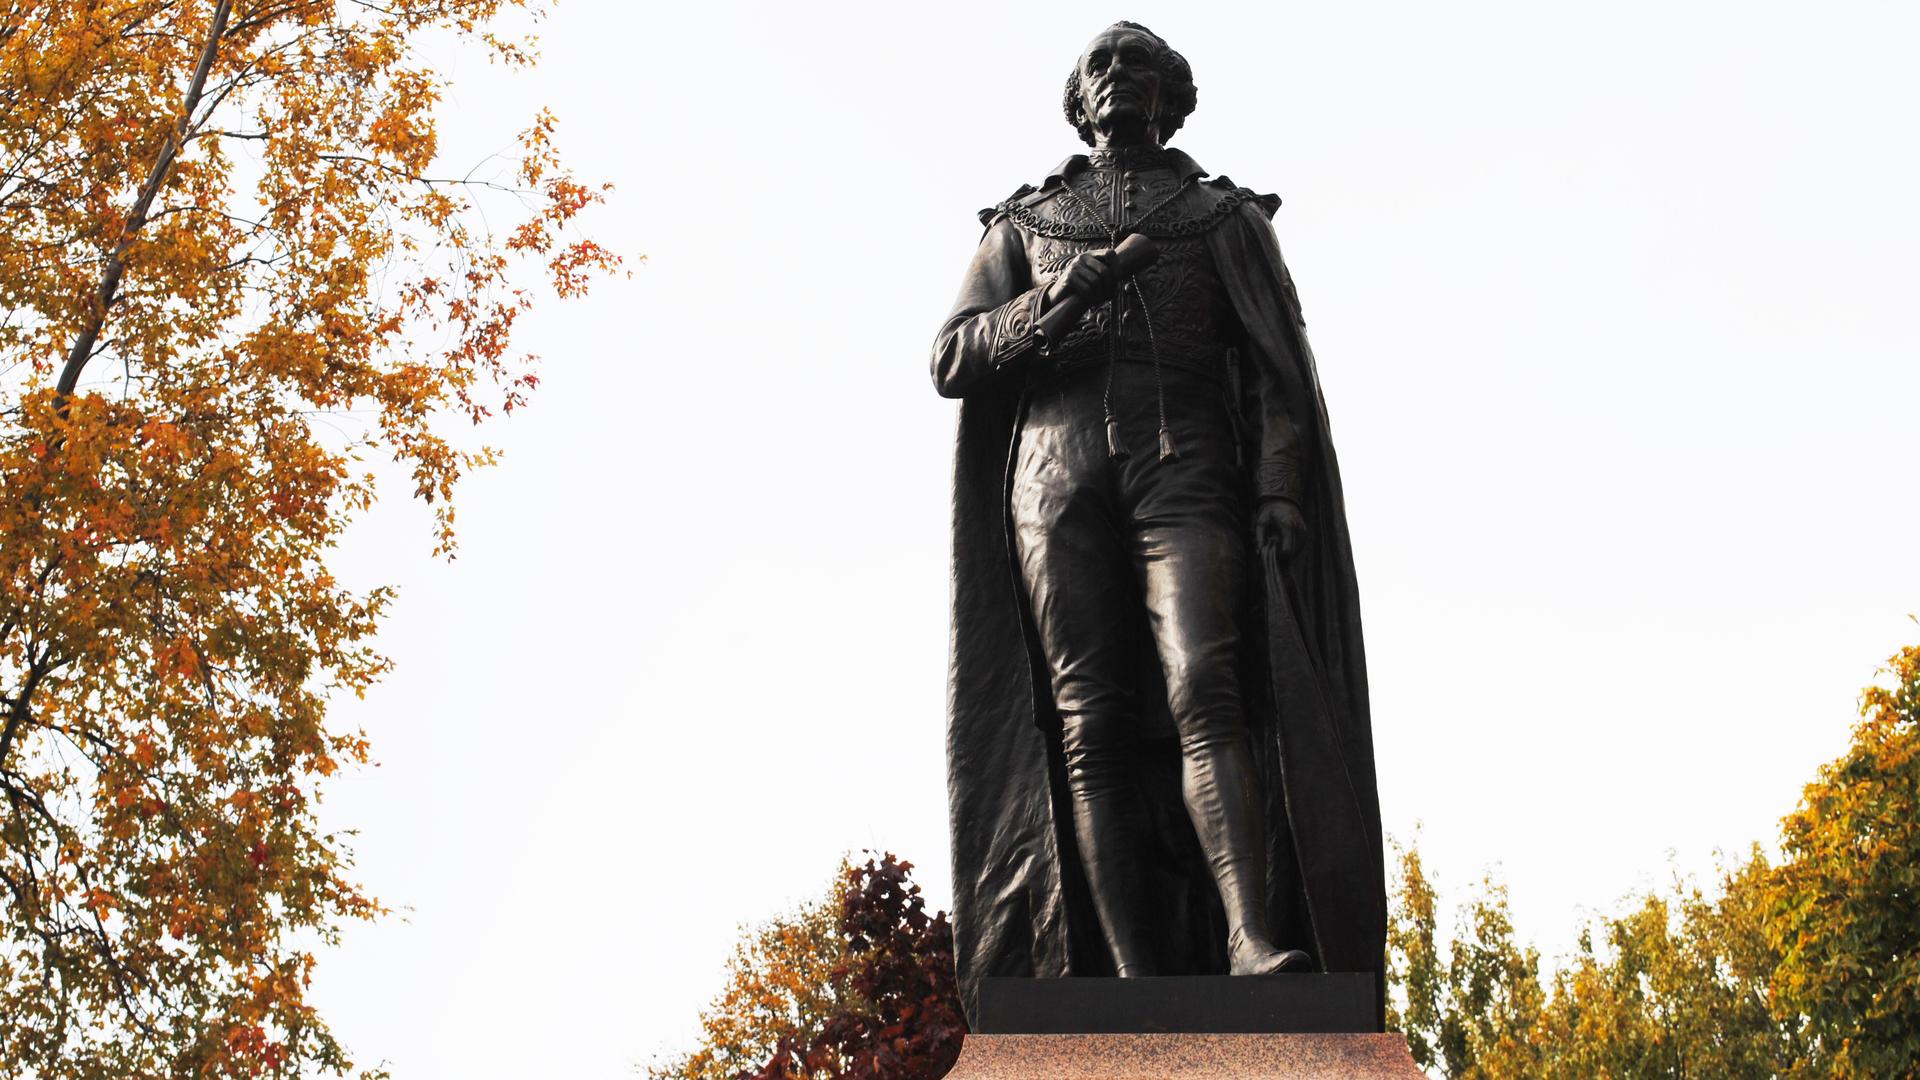 John A. Macdonald's statue against a grey sky